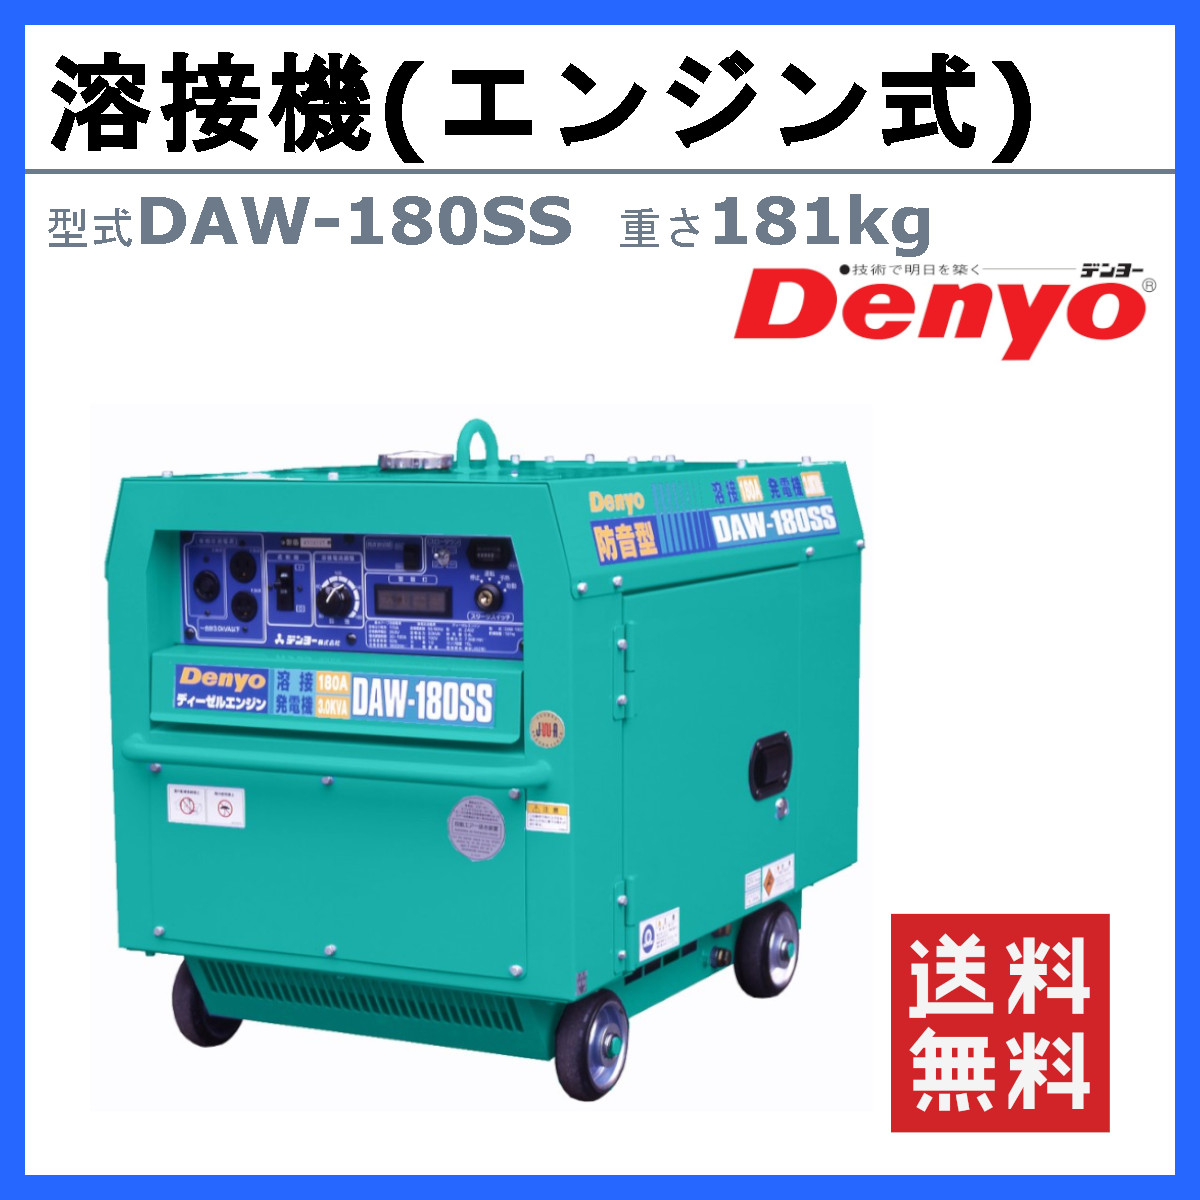 デンヨー 溶接機 DAW-180SS ディーゼル エンジン式 50Hz 60Hz 直流溶接 電源 交流電源 軽量 高性能 低騒音 溶接器 業務用 小型  コンパクト 永久磁石 Denyo